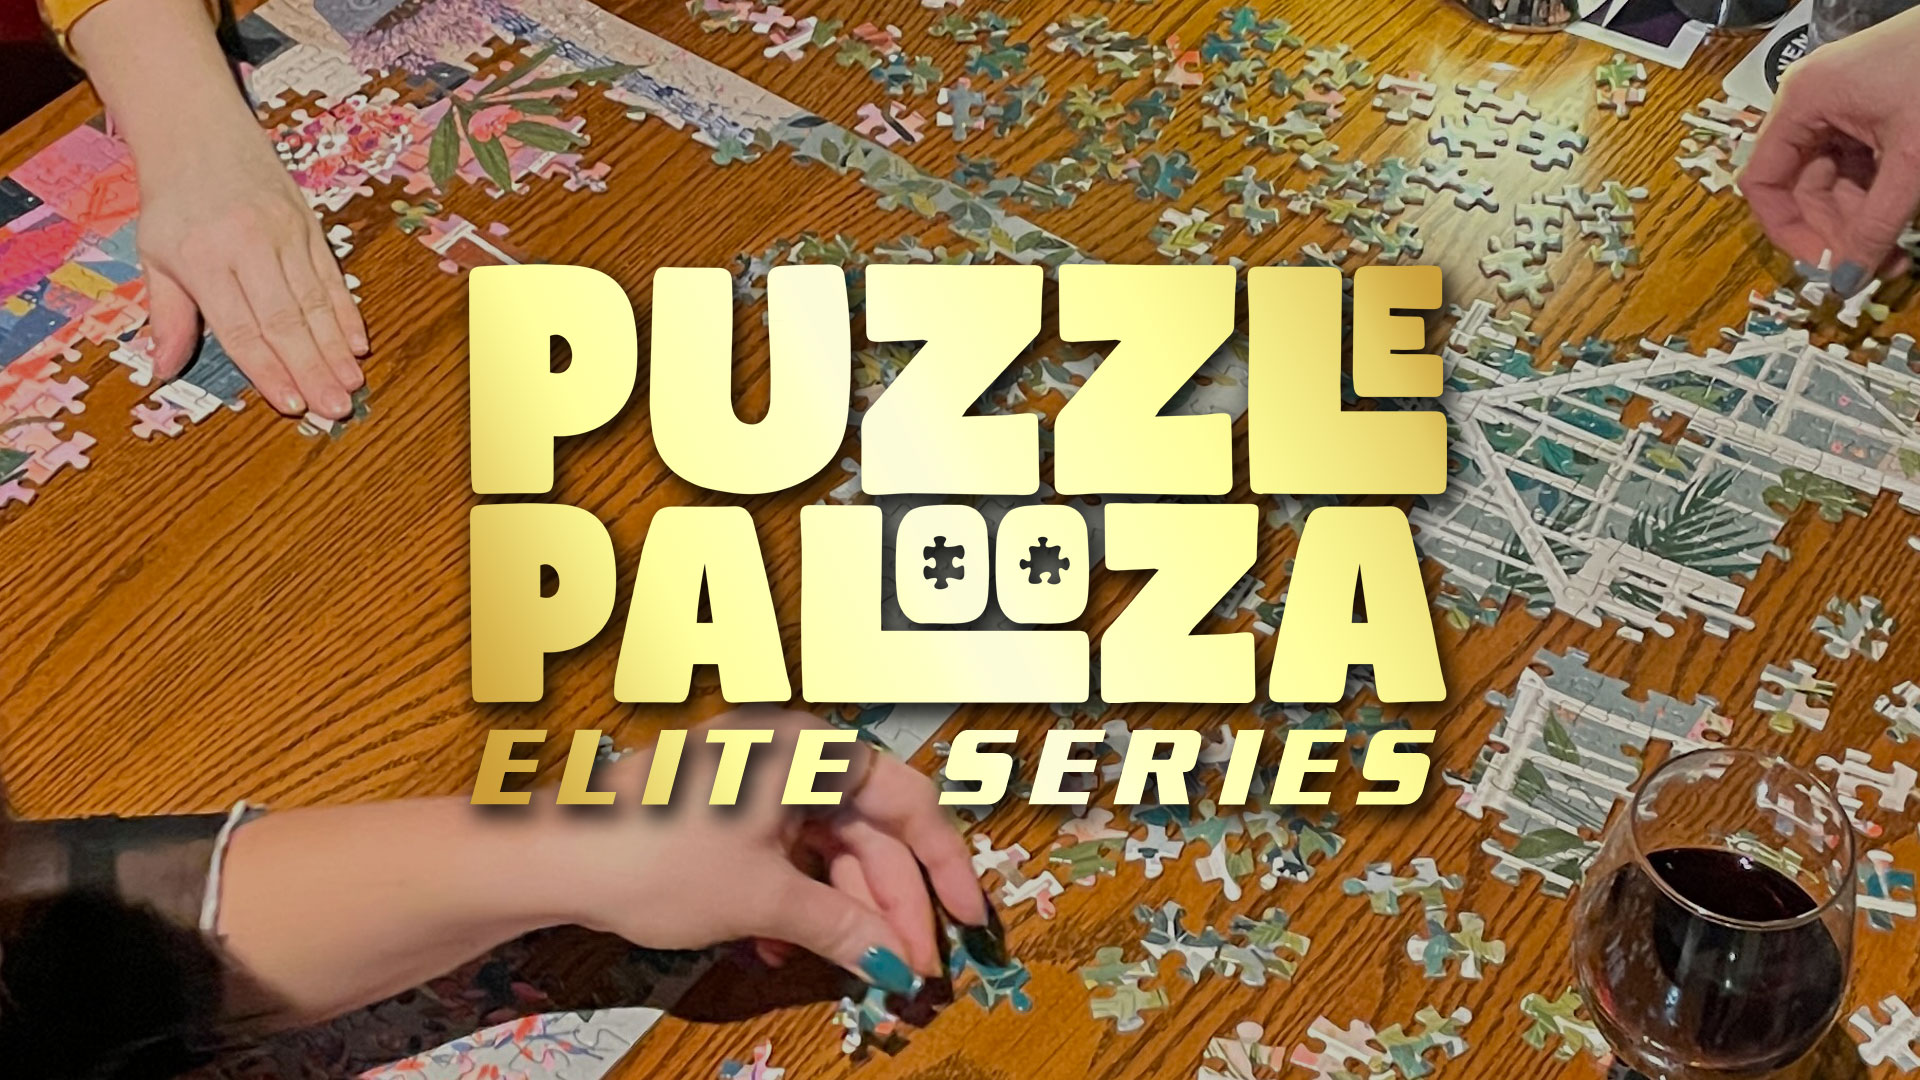 Puzzlepalooza Elite Jigsaw Puzzle Competition Event Image